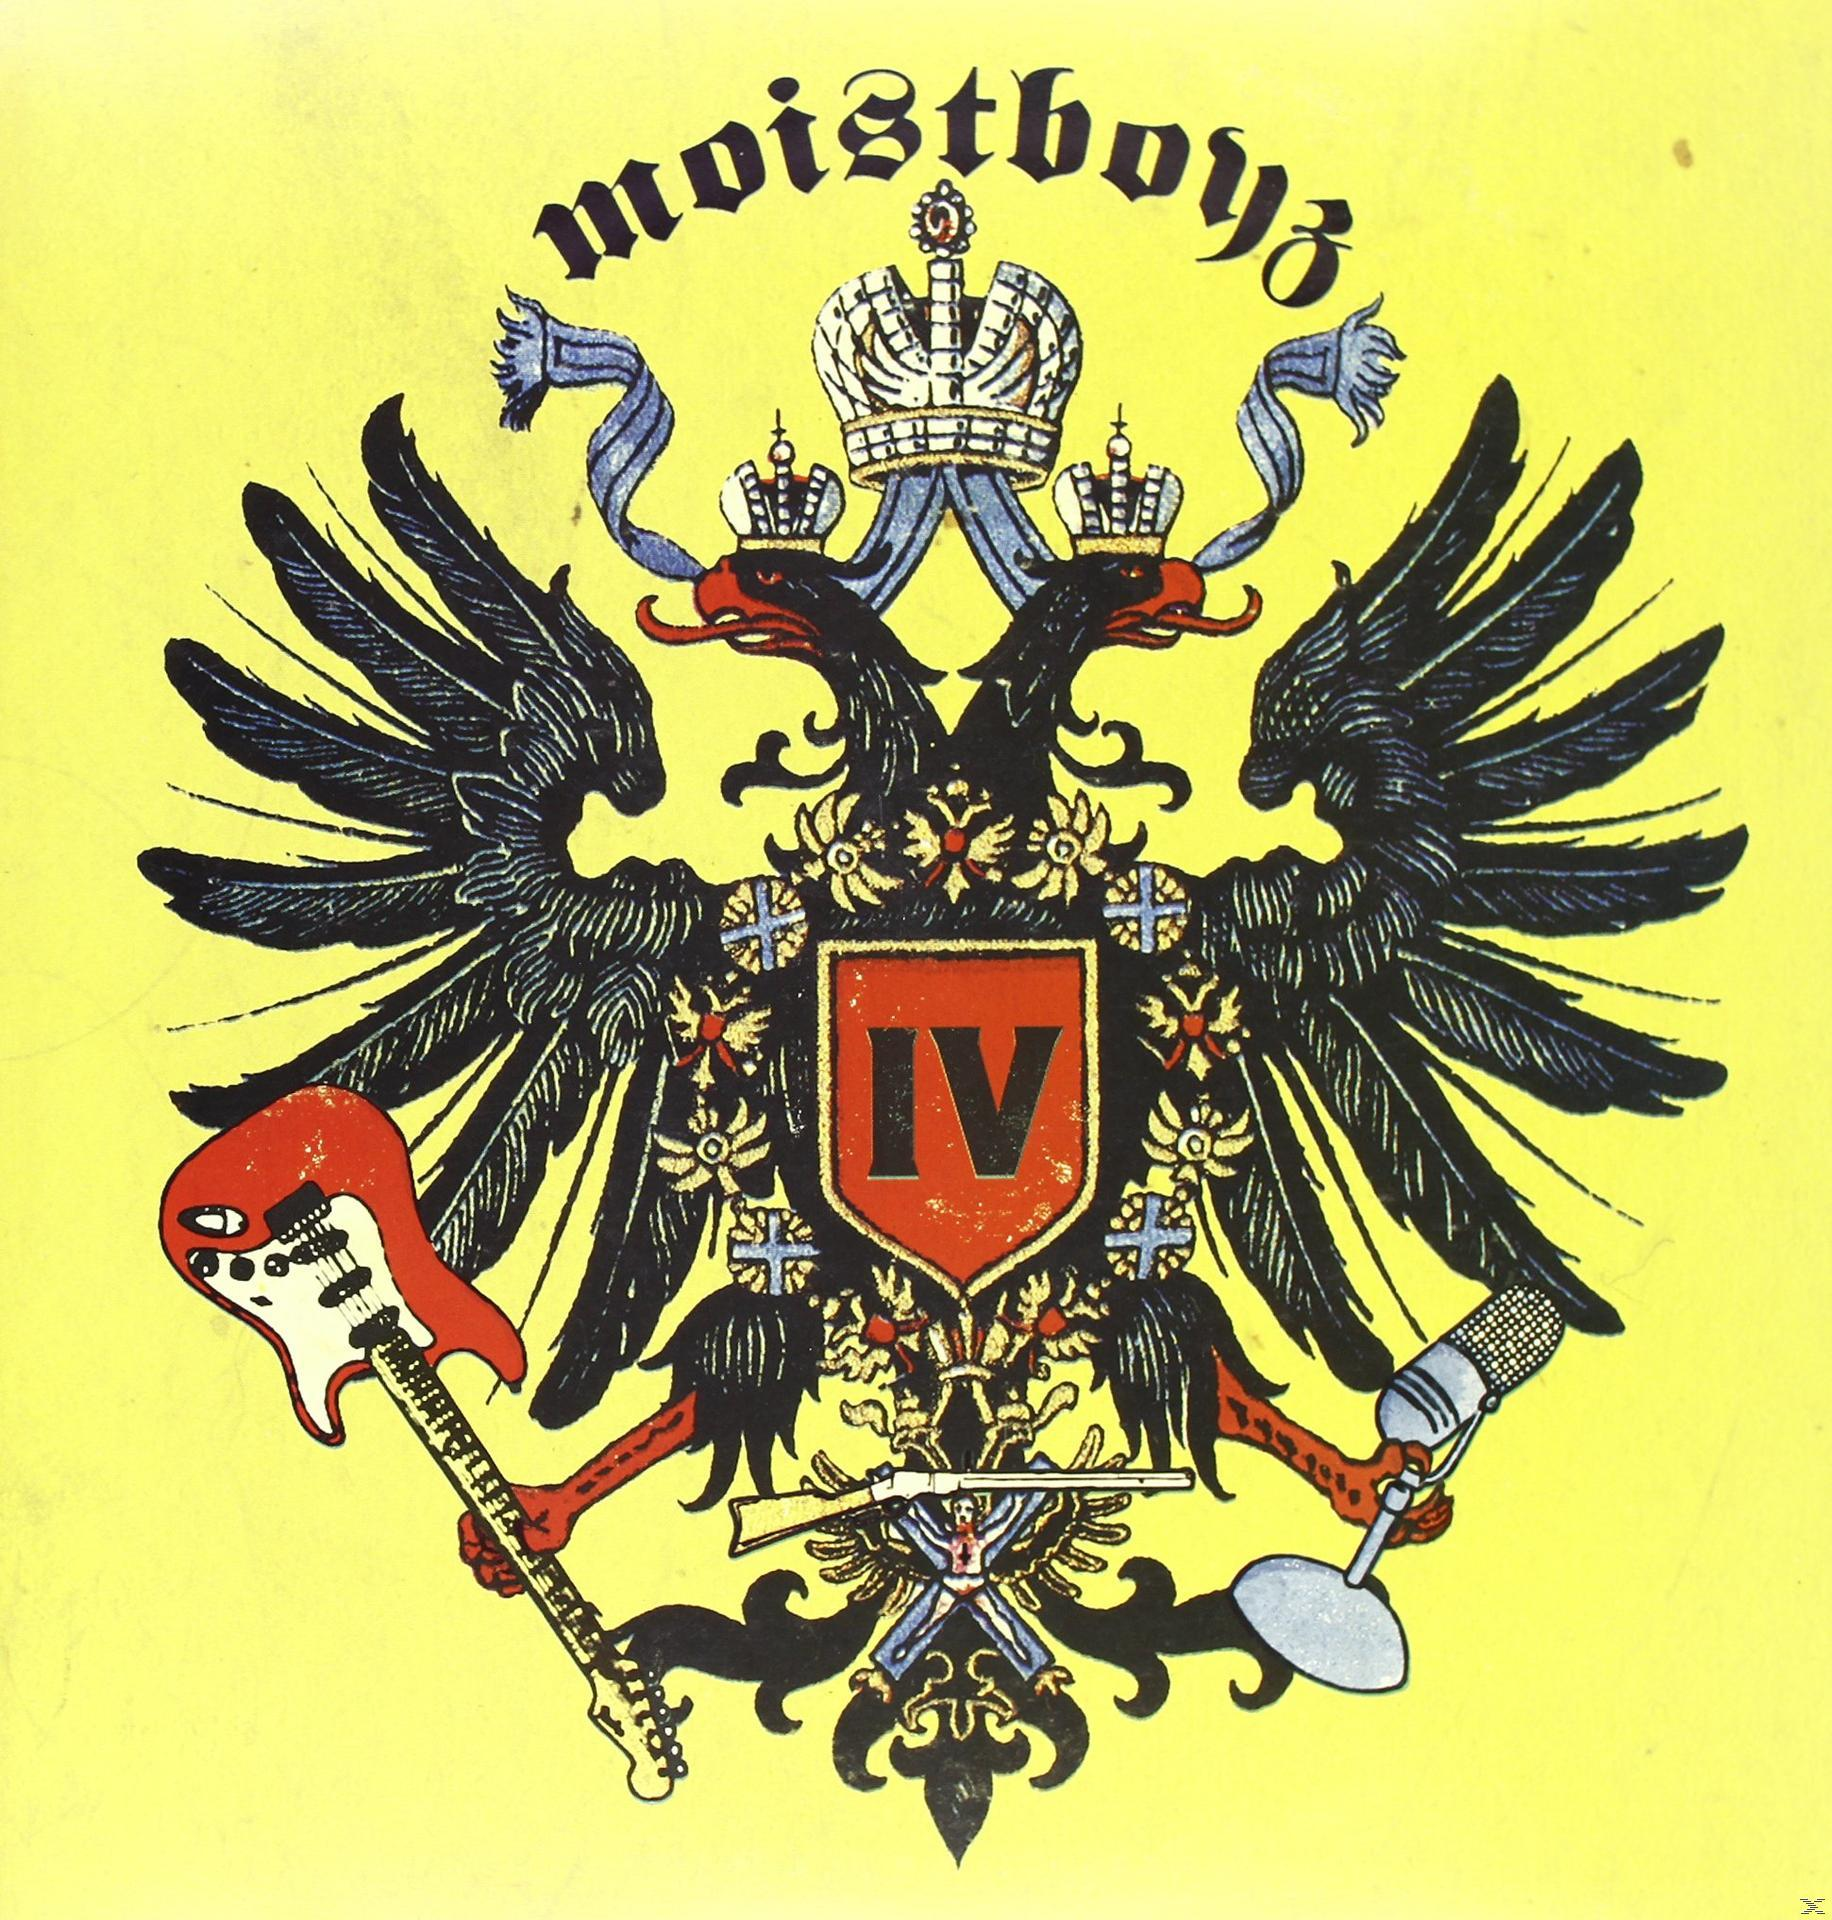 Moistboyz 4 Moistboyz - (Vinyl) -